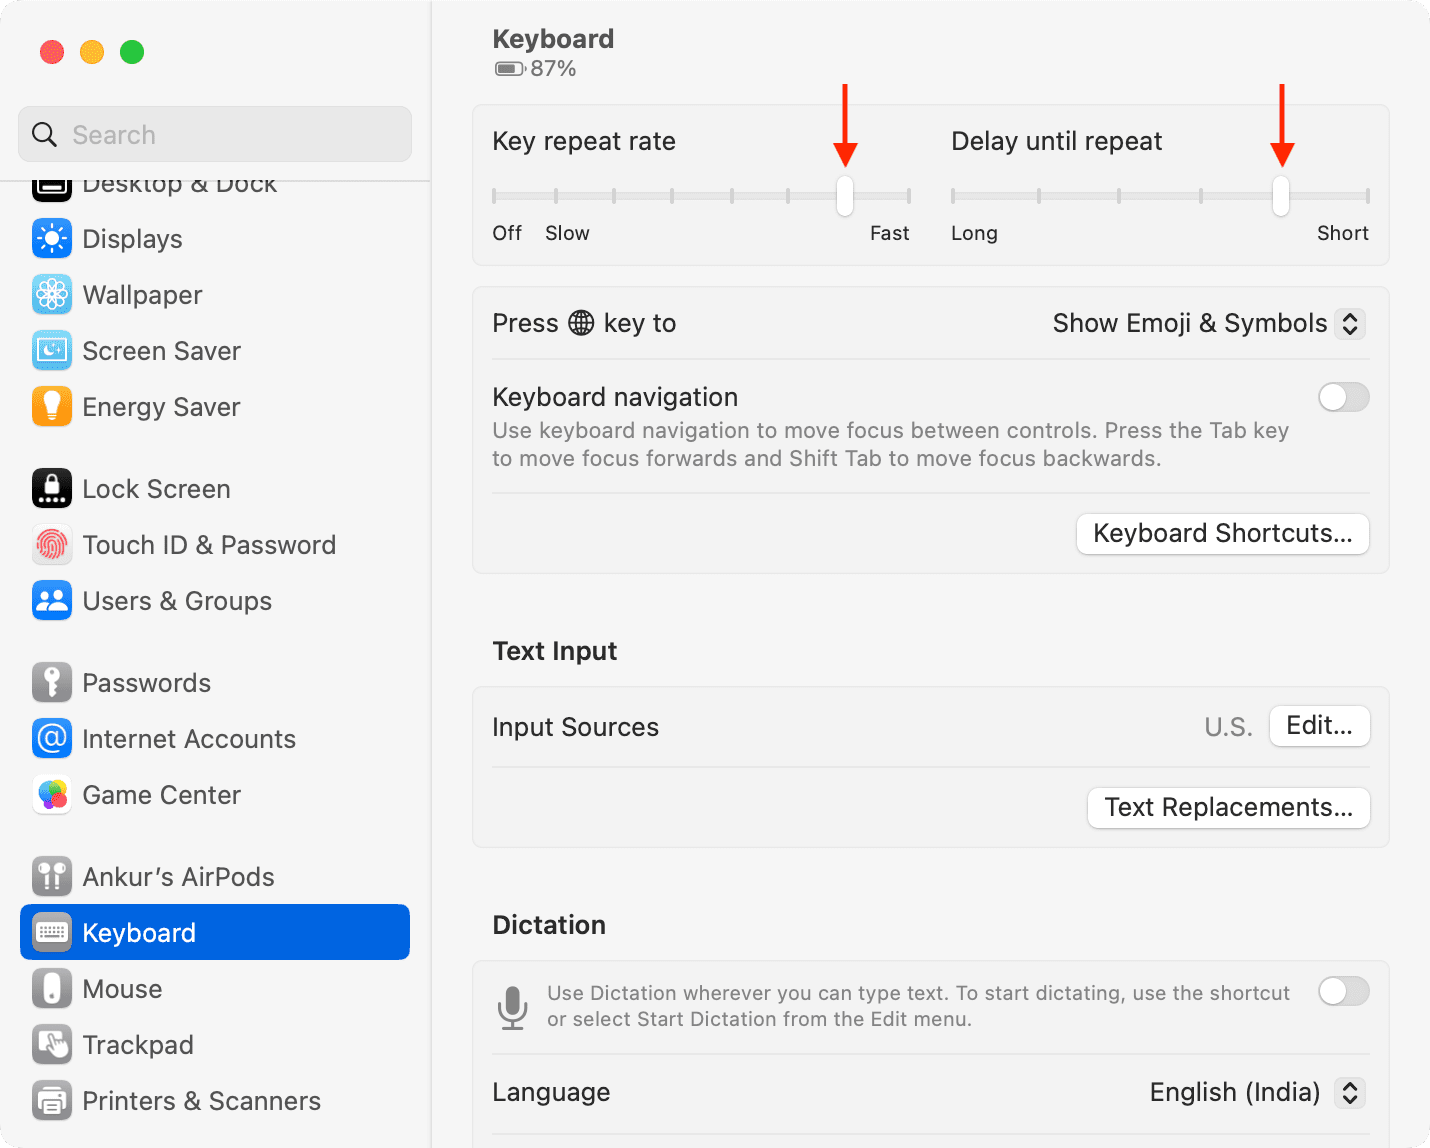 Taux de répétition des touches et délai jusqu'à la répétition dans les paramètres du clavier sur Mac